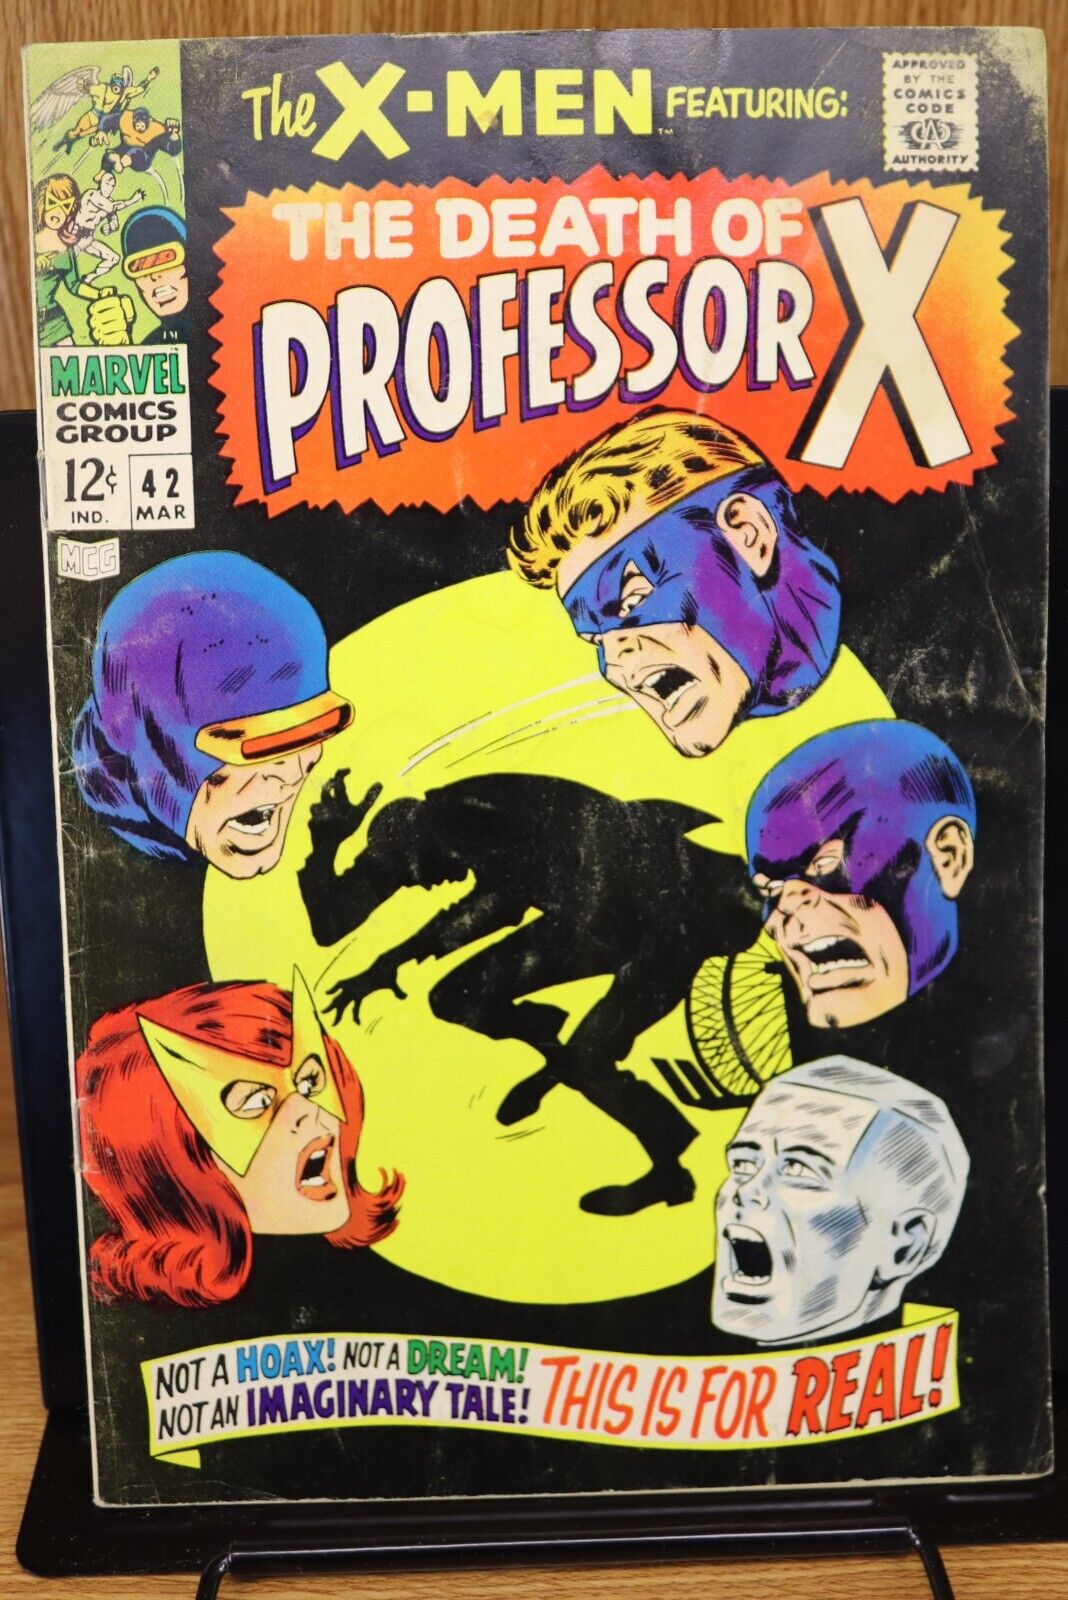 X-MEN #42 (1968) - GRADE 5.0 - THE DEATH OF PROFESSOR X - ORIGIN STORY